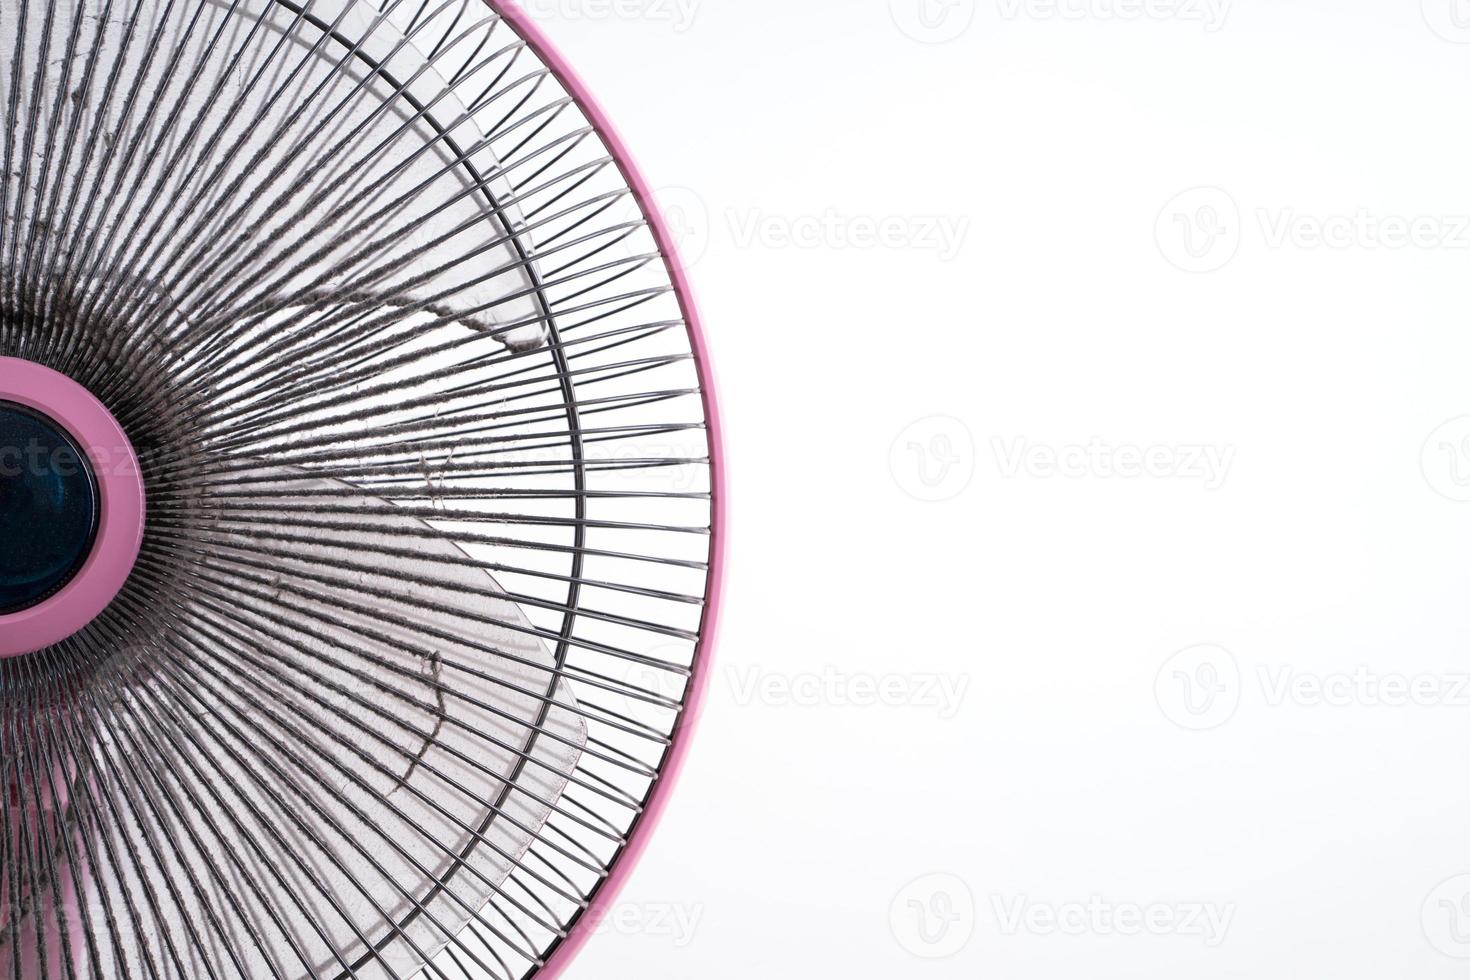 vuile elektrische ventilator op witte achtergrond foto